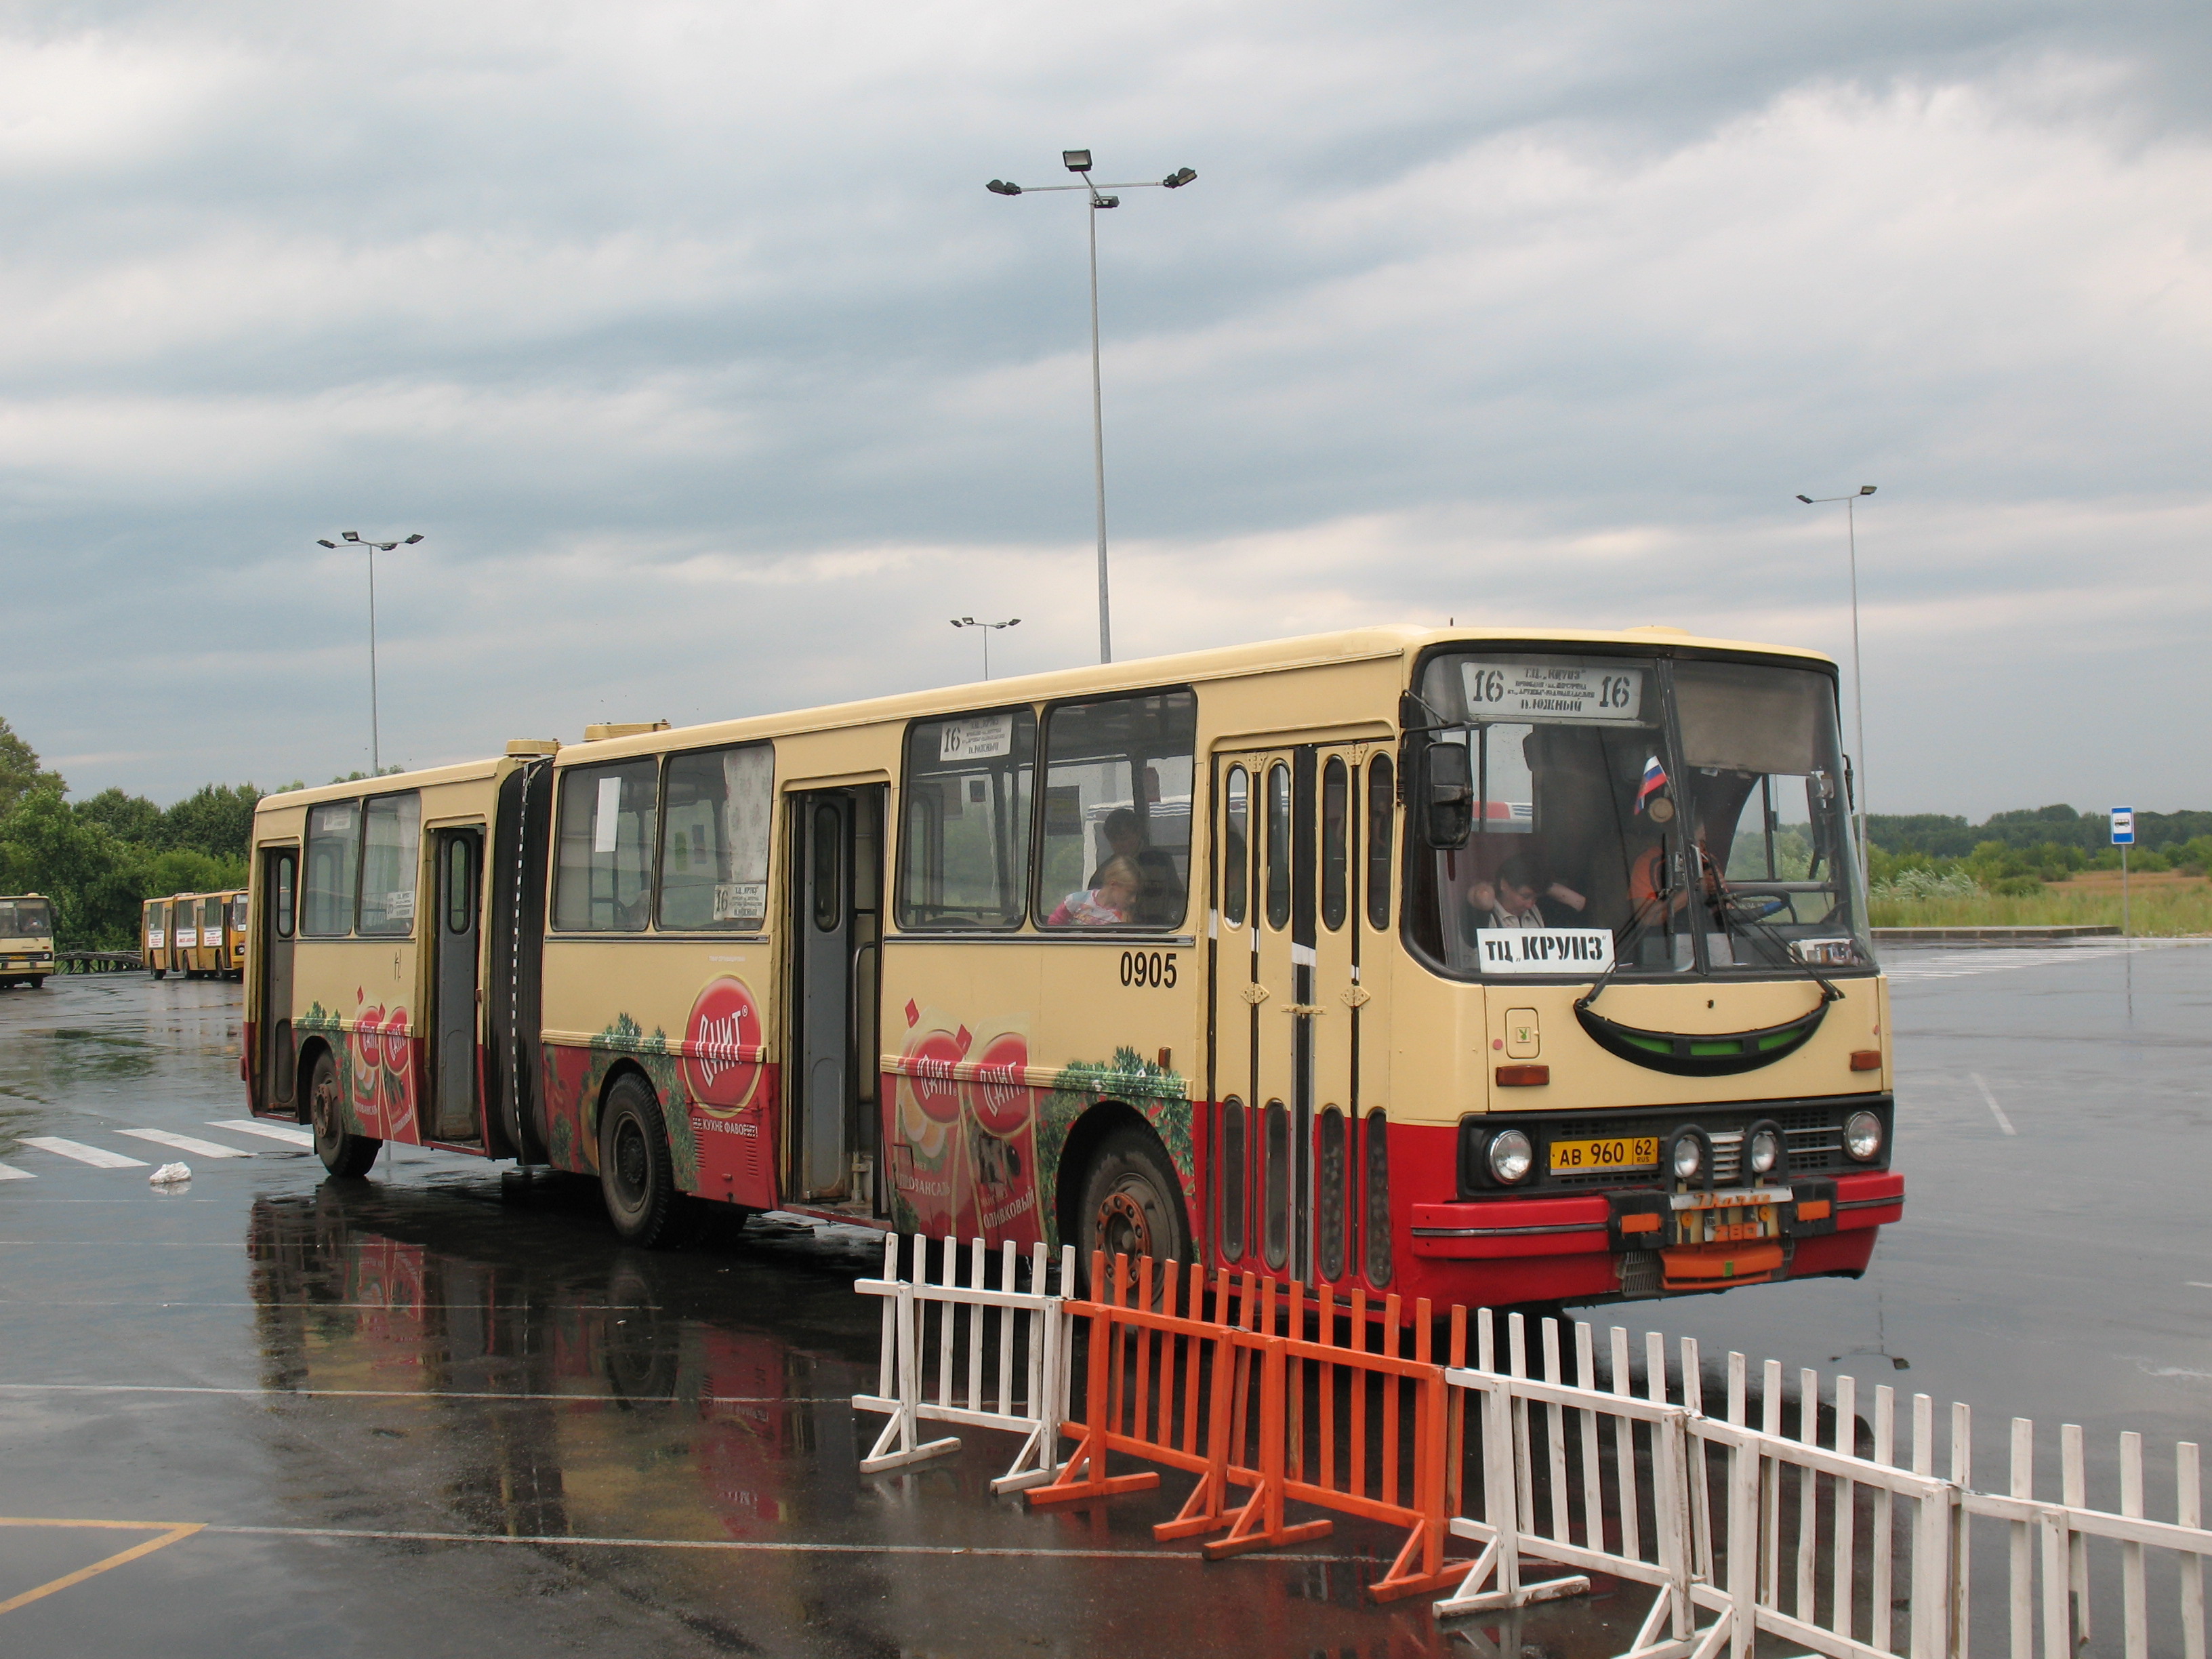 Городской автобус Ikarus 280 АВ 960 62